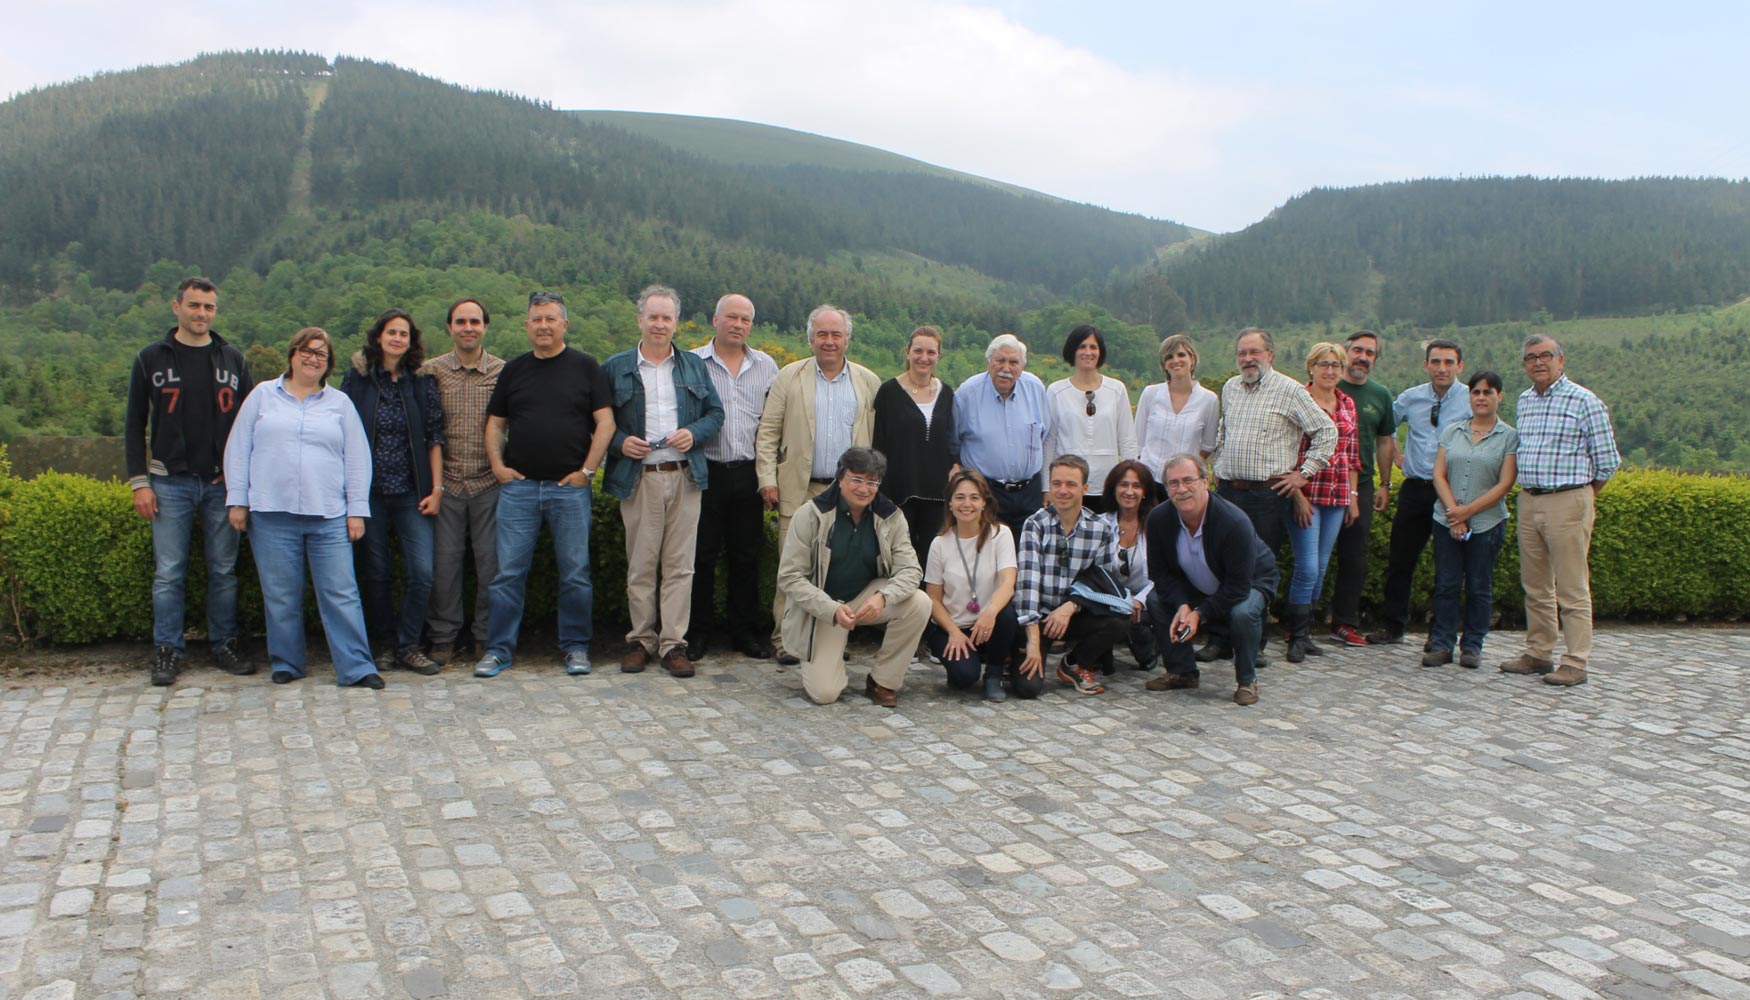 Junto a otras personalidades del sector, en este evento se han reunido los presidentes de las Asociaciones de Propietarios Forestales de Galicia...